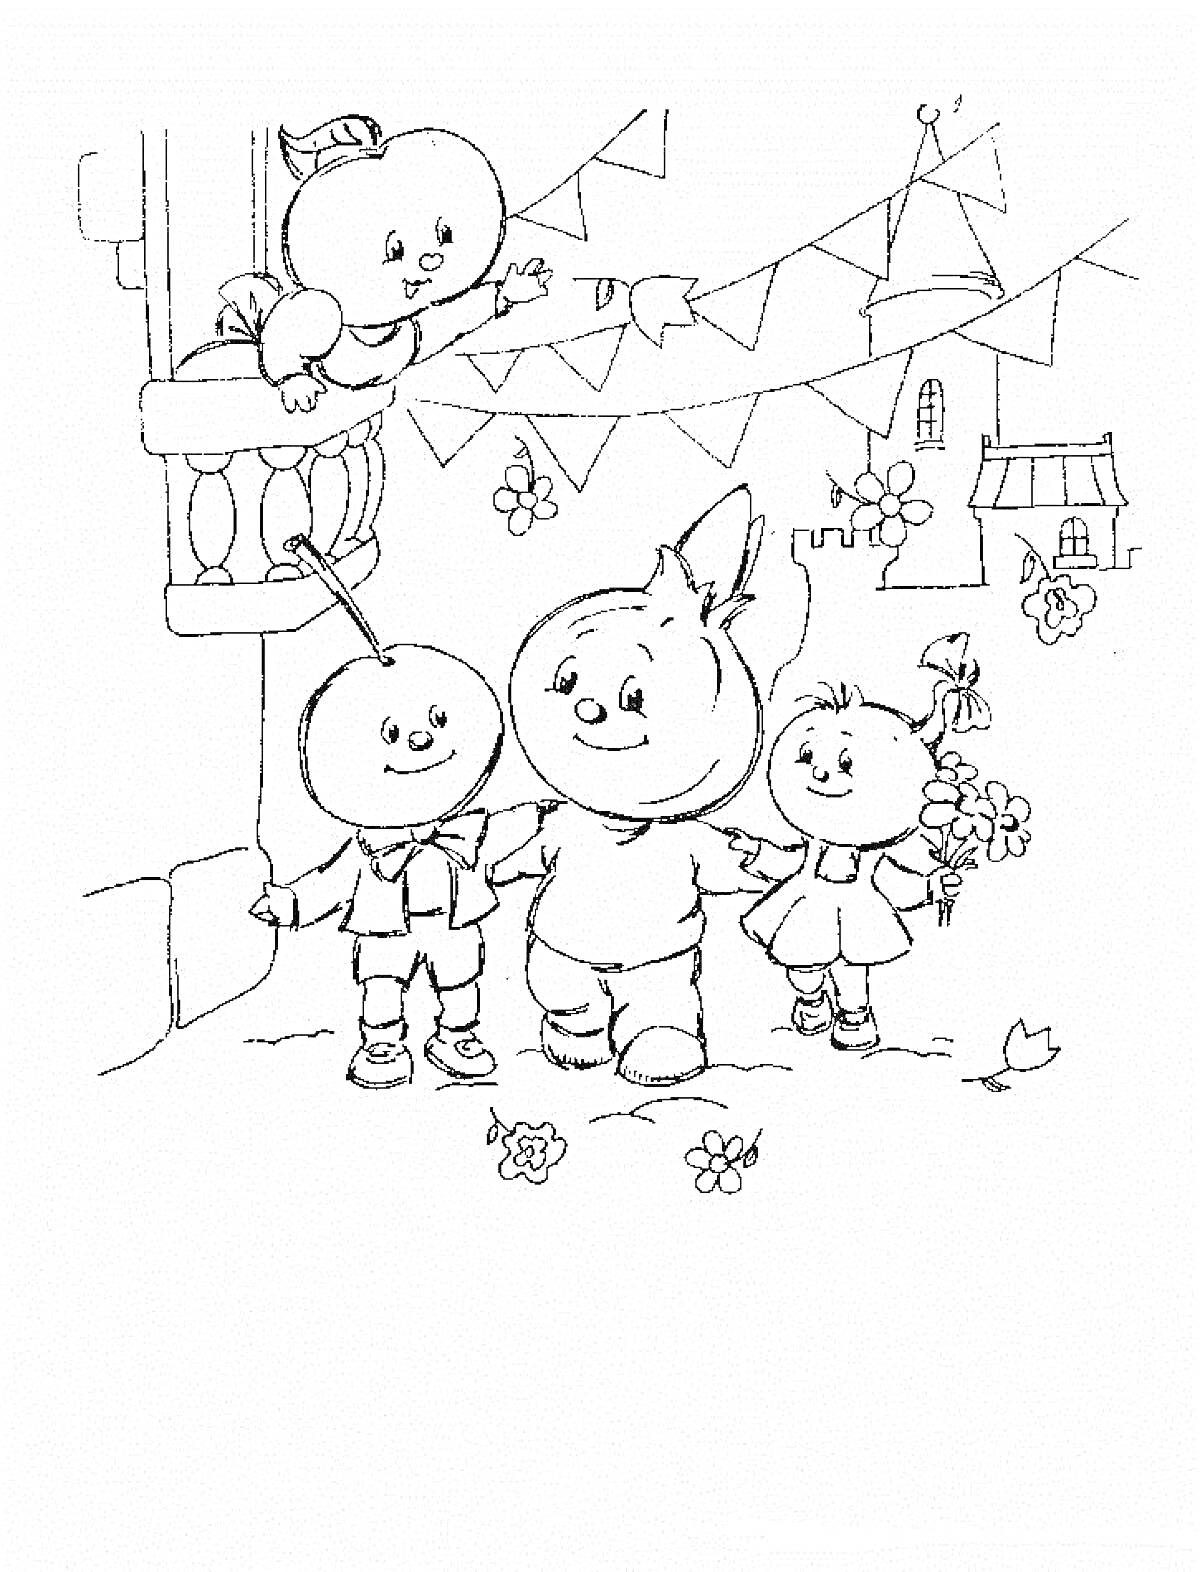 Раскраска Чиполлино и друзья на городской улице, один персонаж на балконе, гирлянды с флажками, цветы